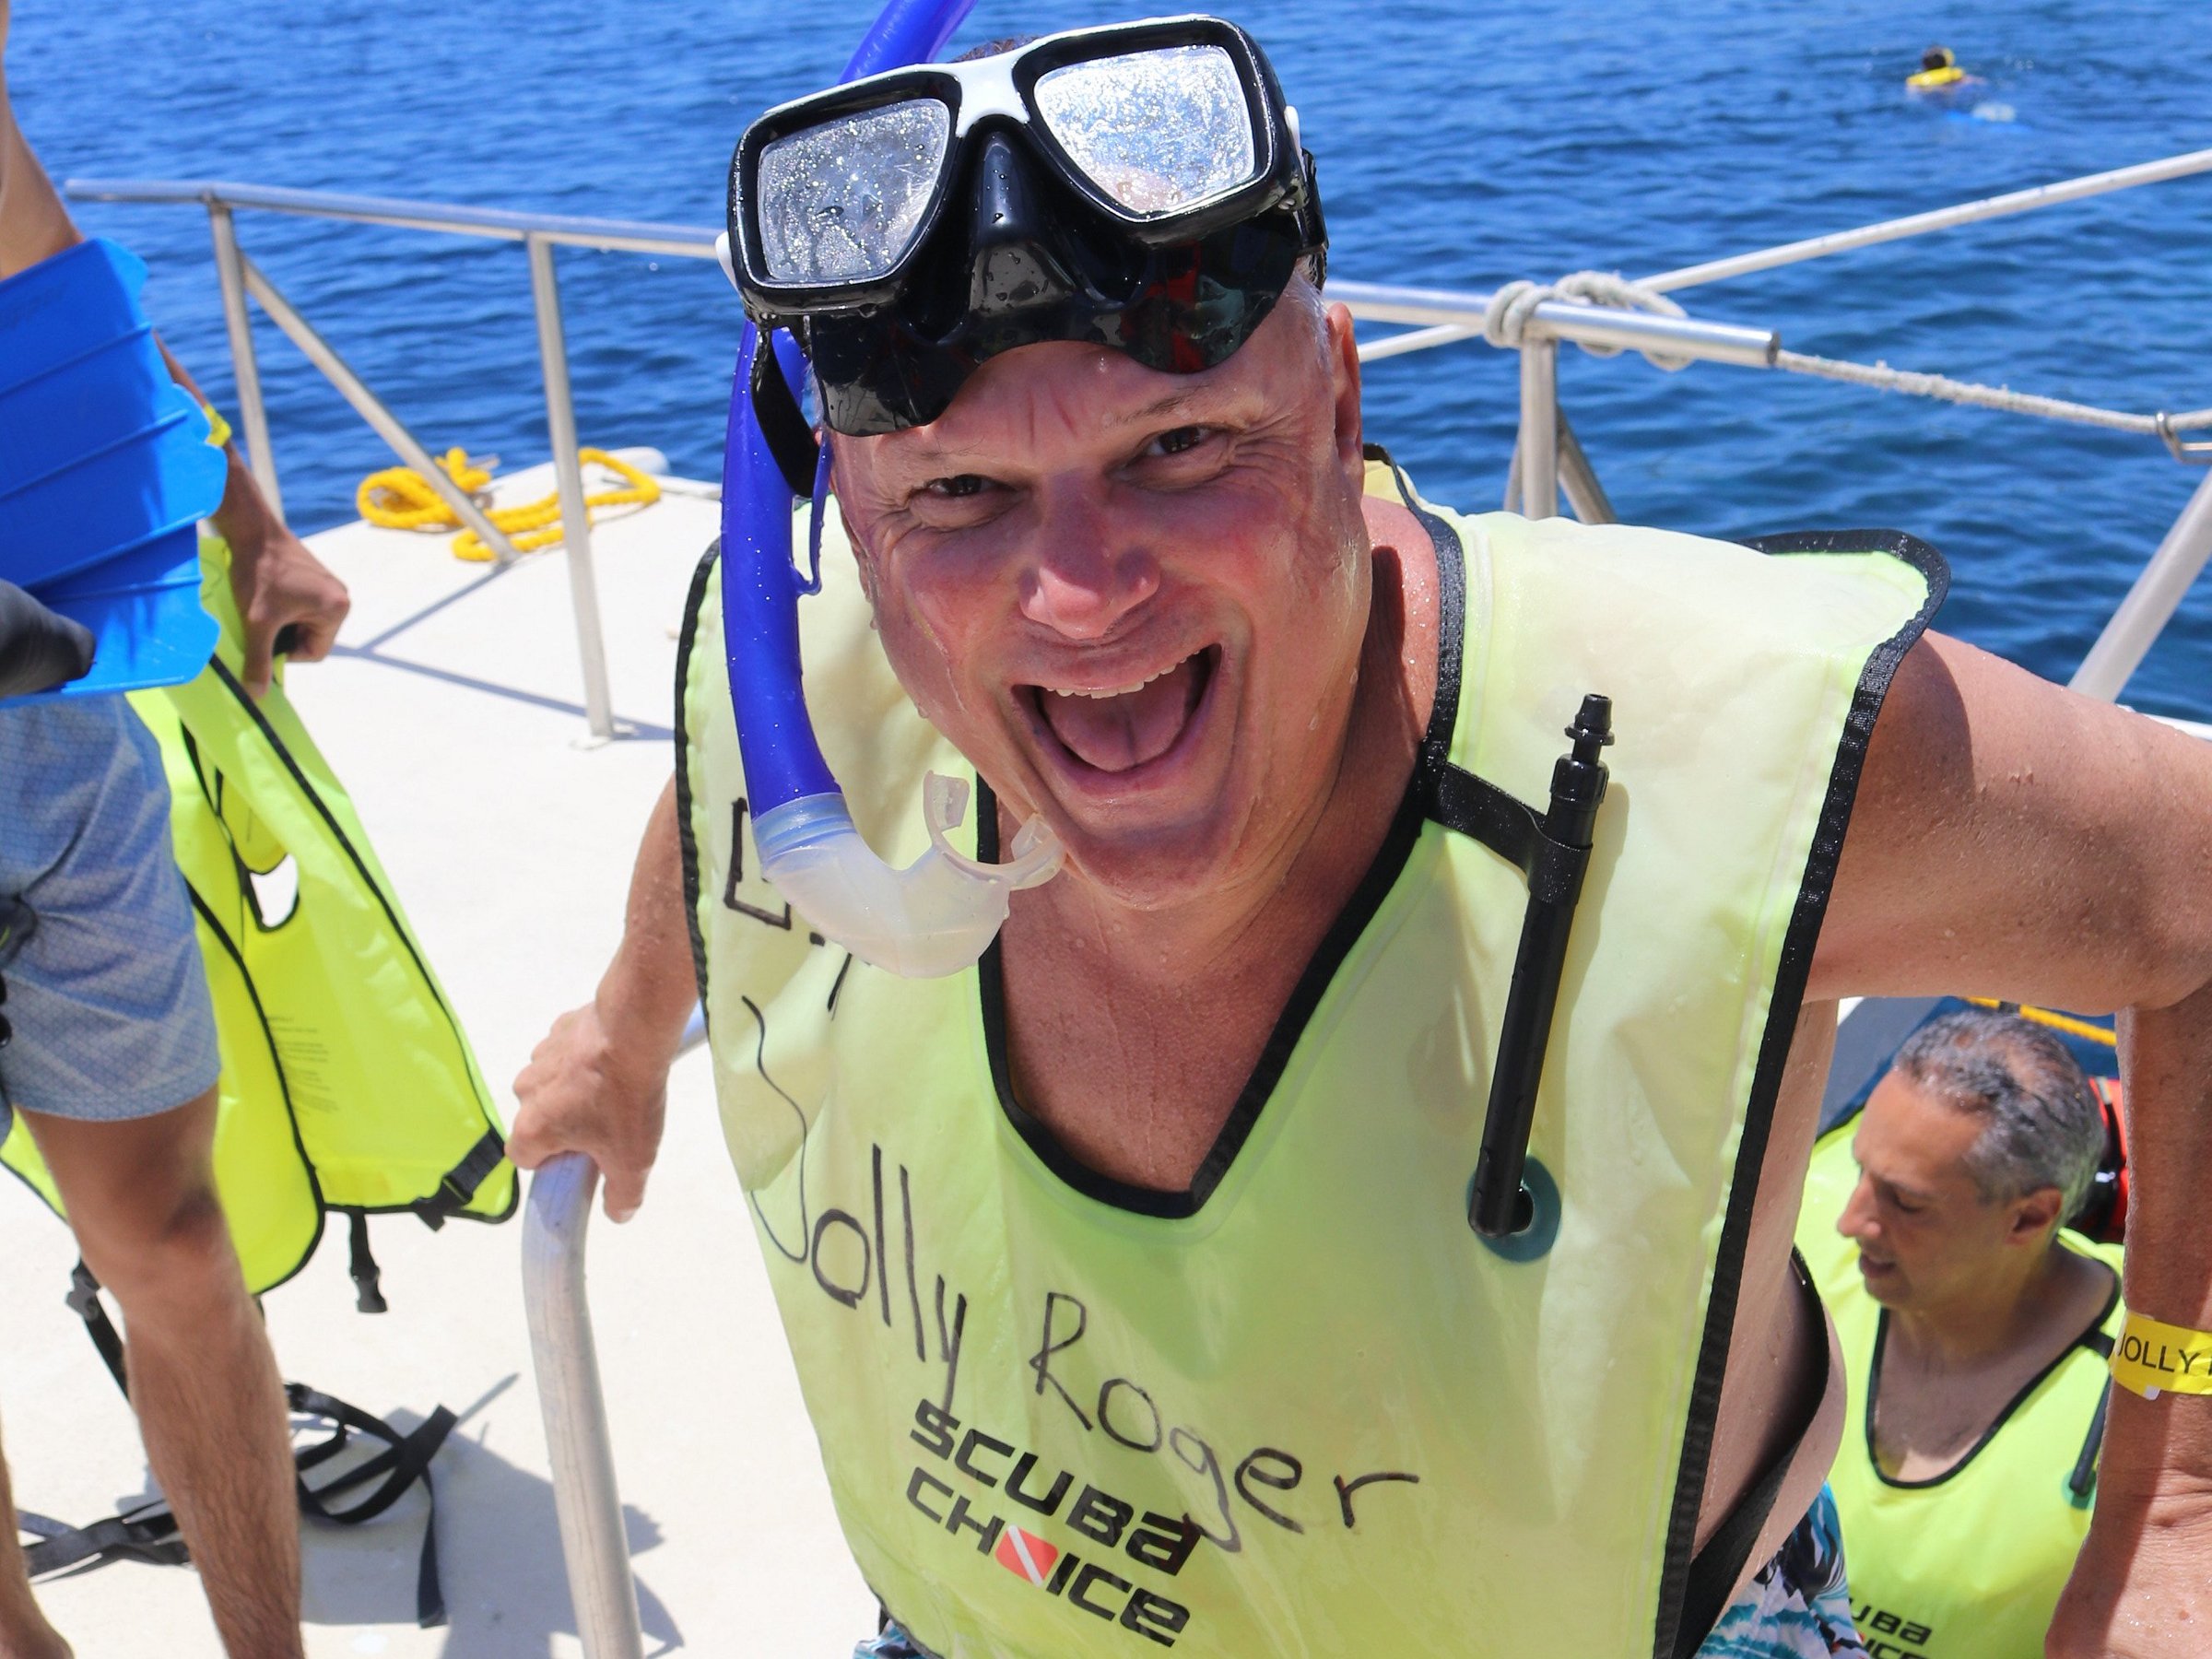 jolly roger catamaran sail & snorkeling roatan honduras